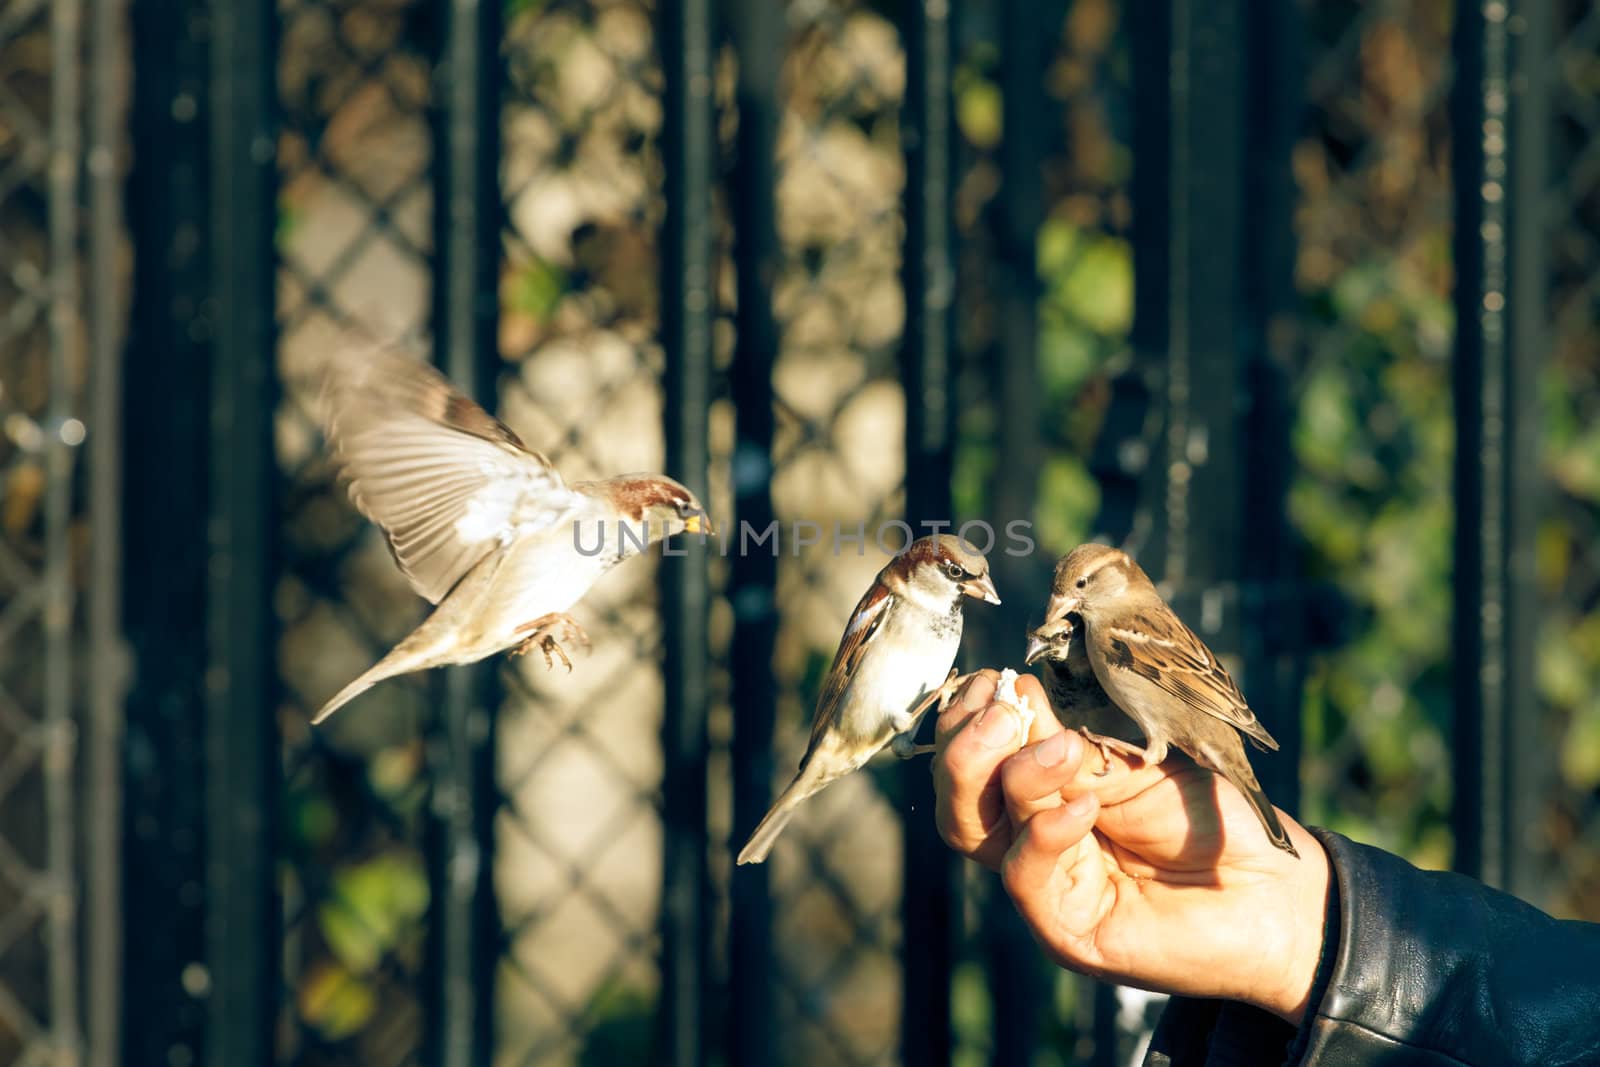 Man feeding sparrows by Lamarinx